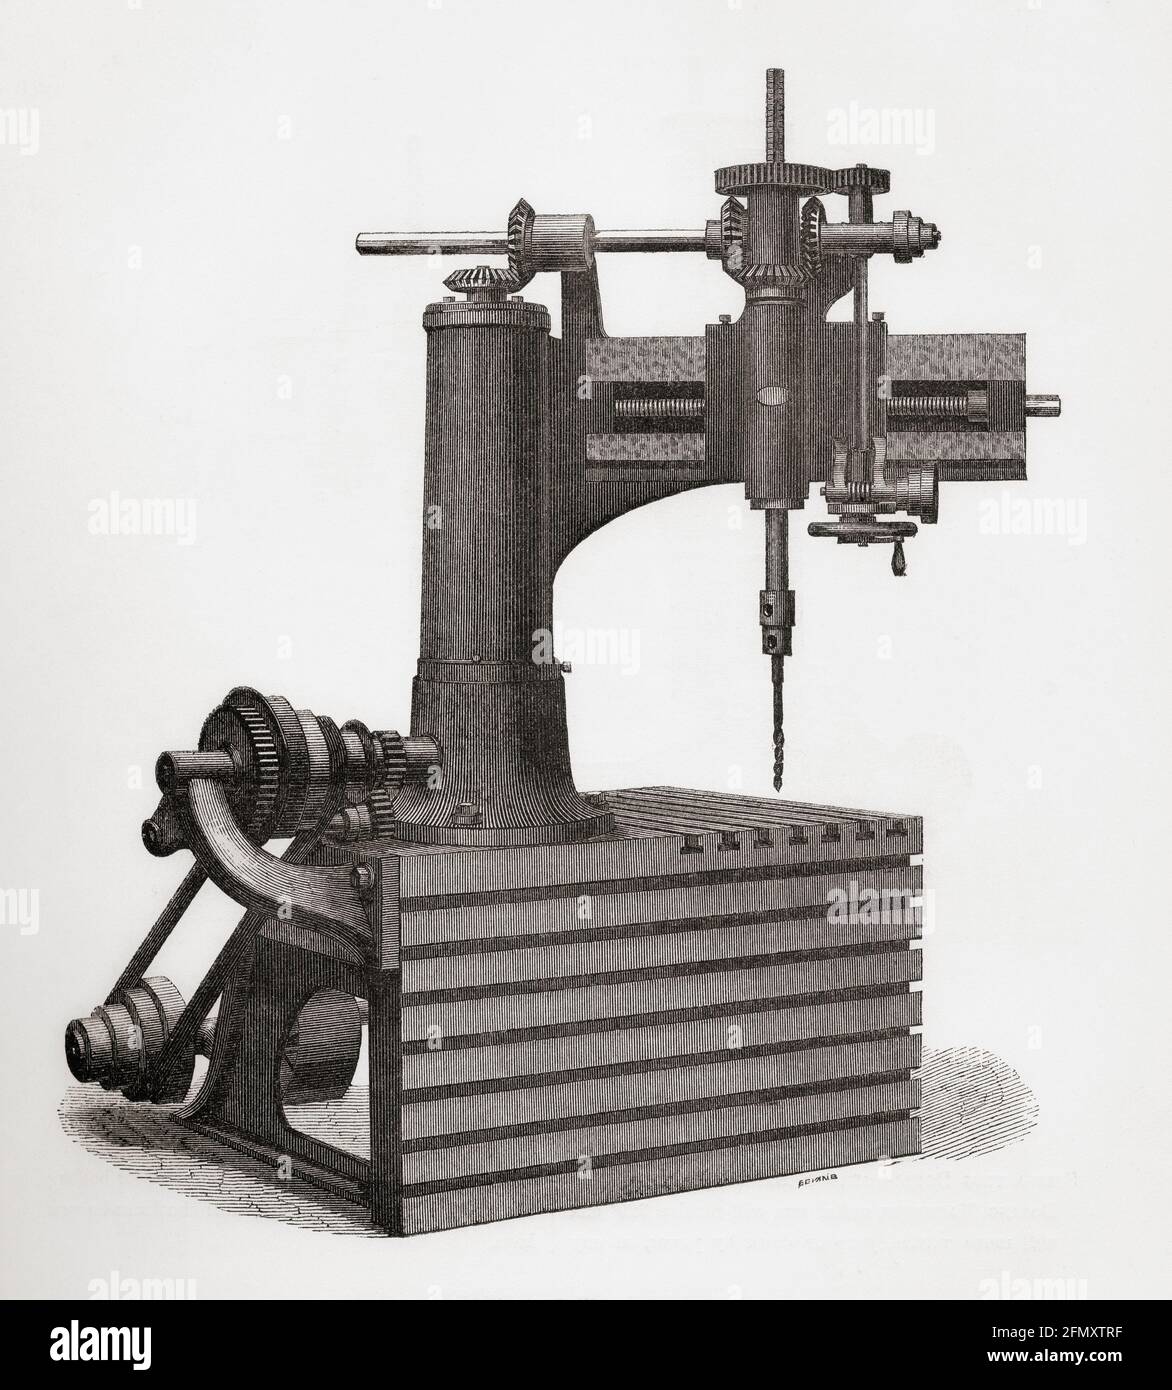 Foratrice radiale ad azione automatica e a doppia corona. Da una breve storia dell'esposizione internazionale del 1862, pubblicato nel 1862. Foto Stock